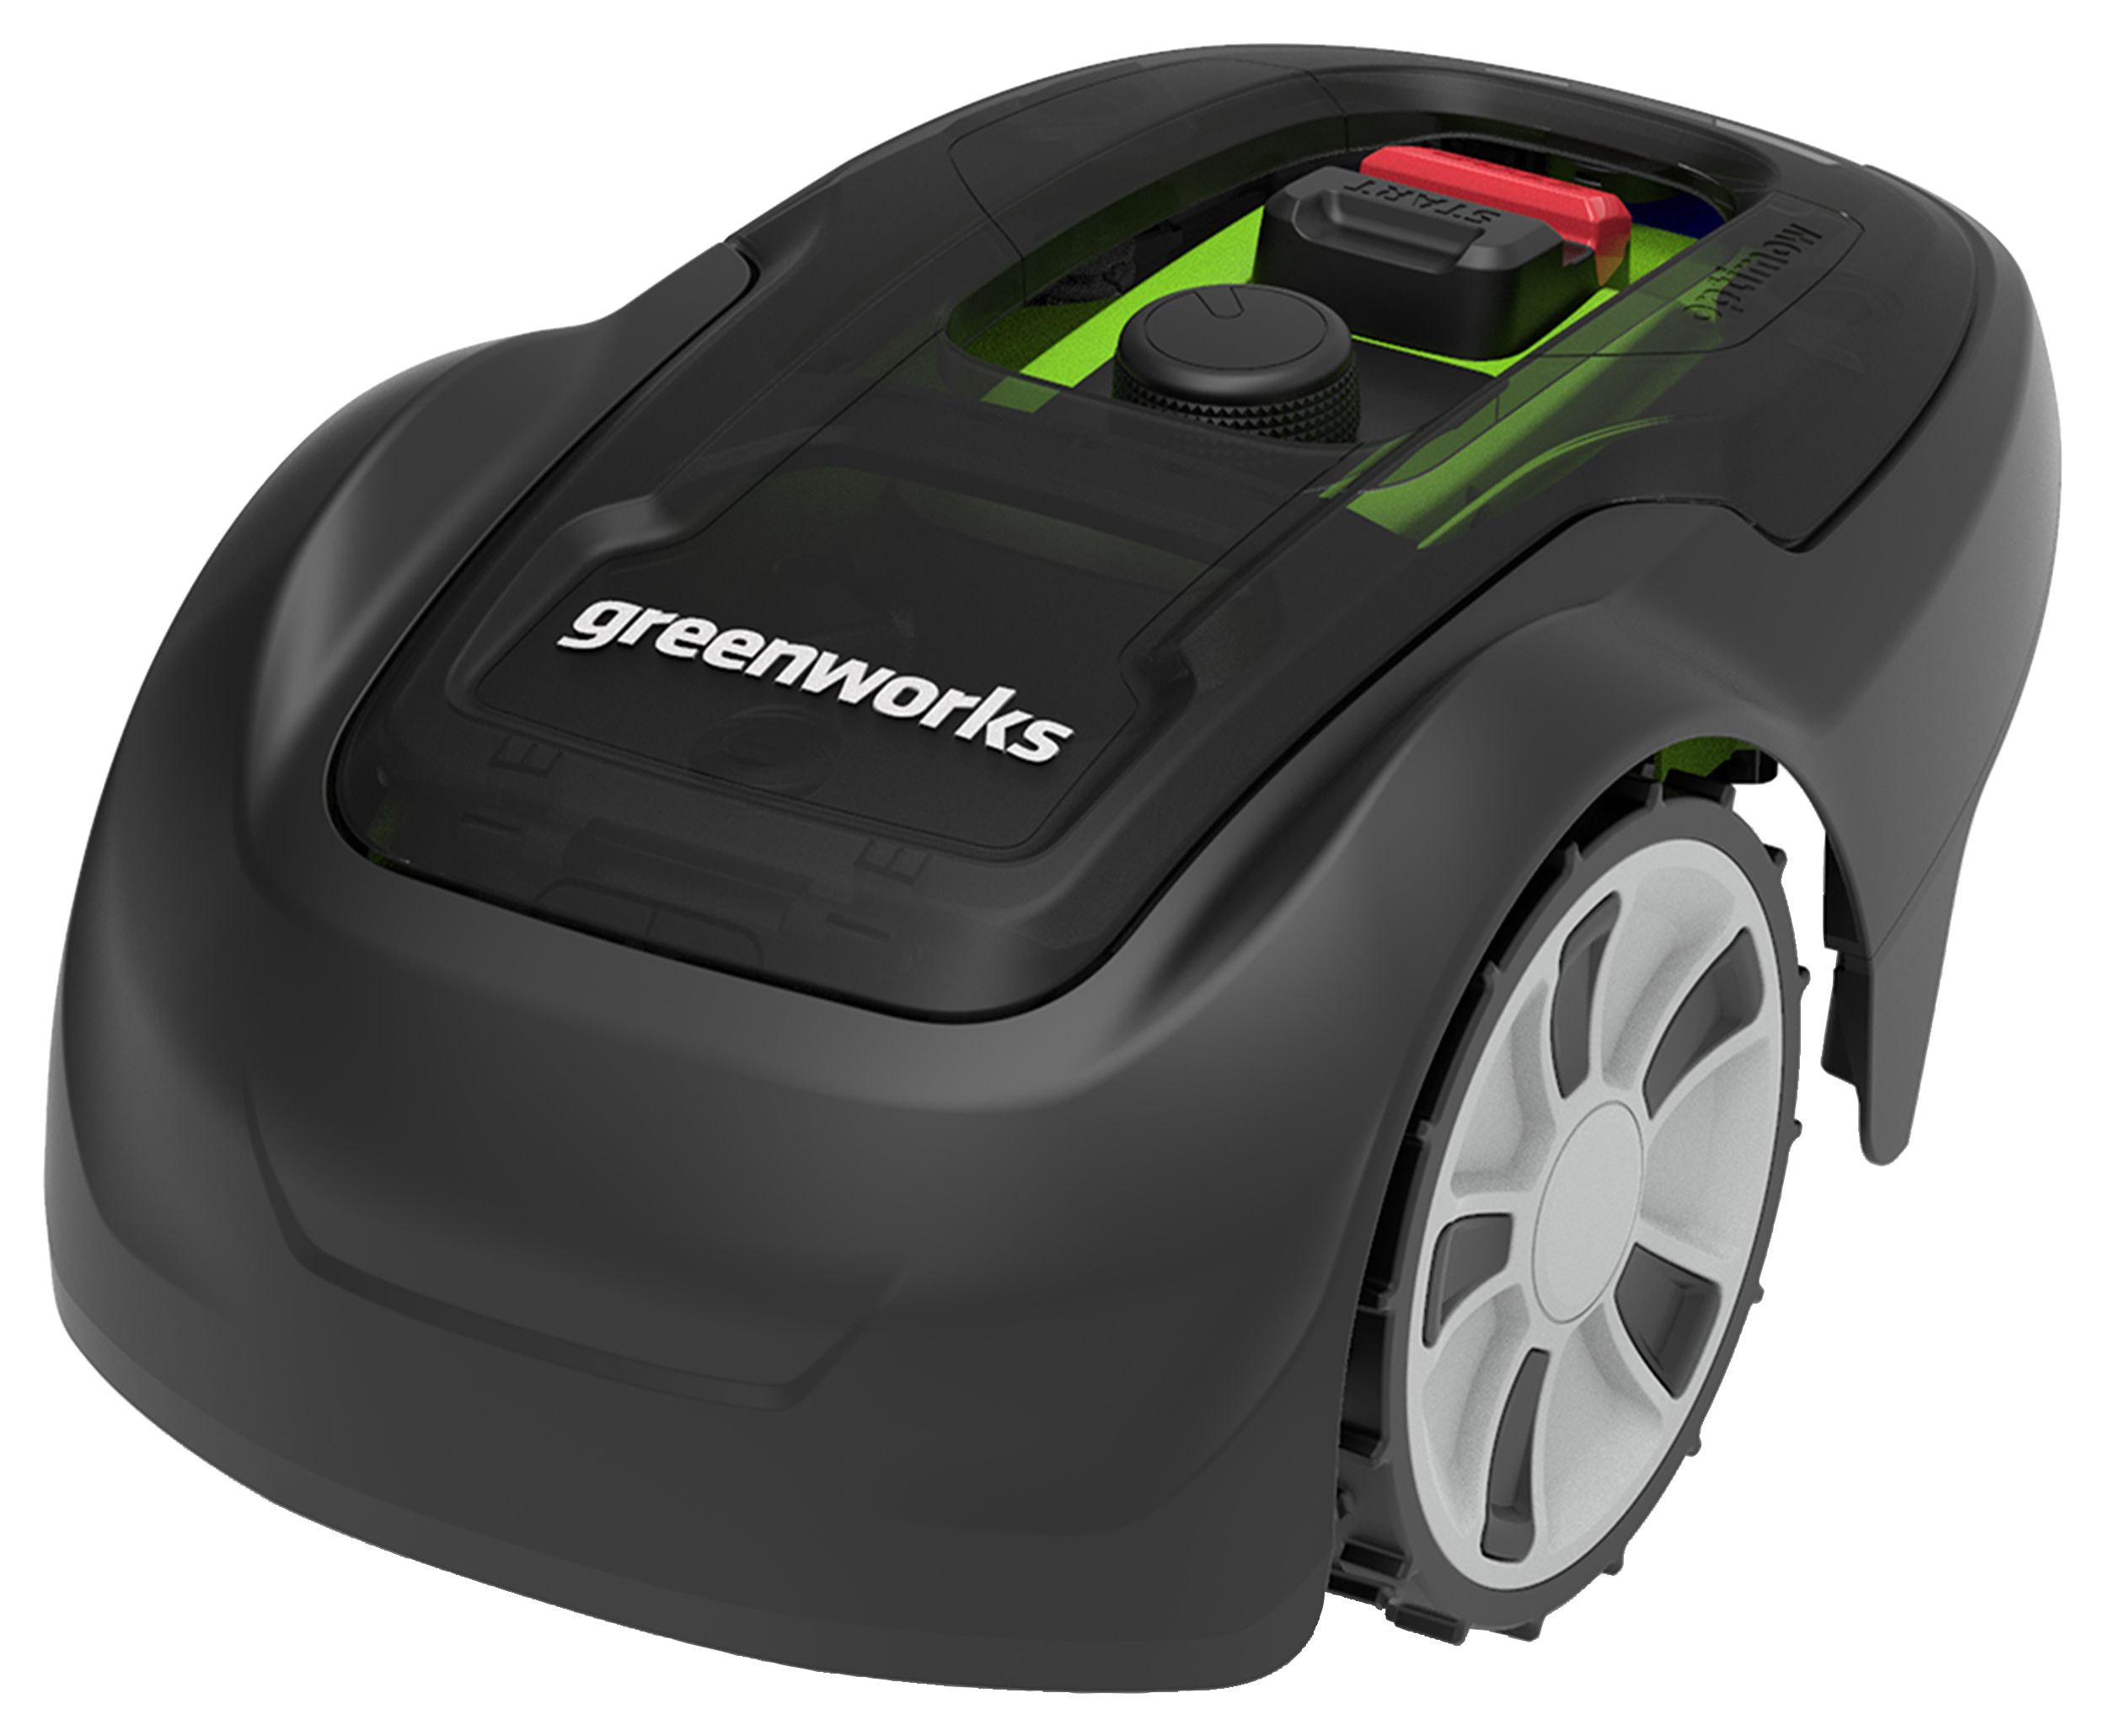 Greenworks Robotic Lightweight Lawn Mower - 750m˛